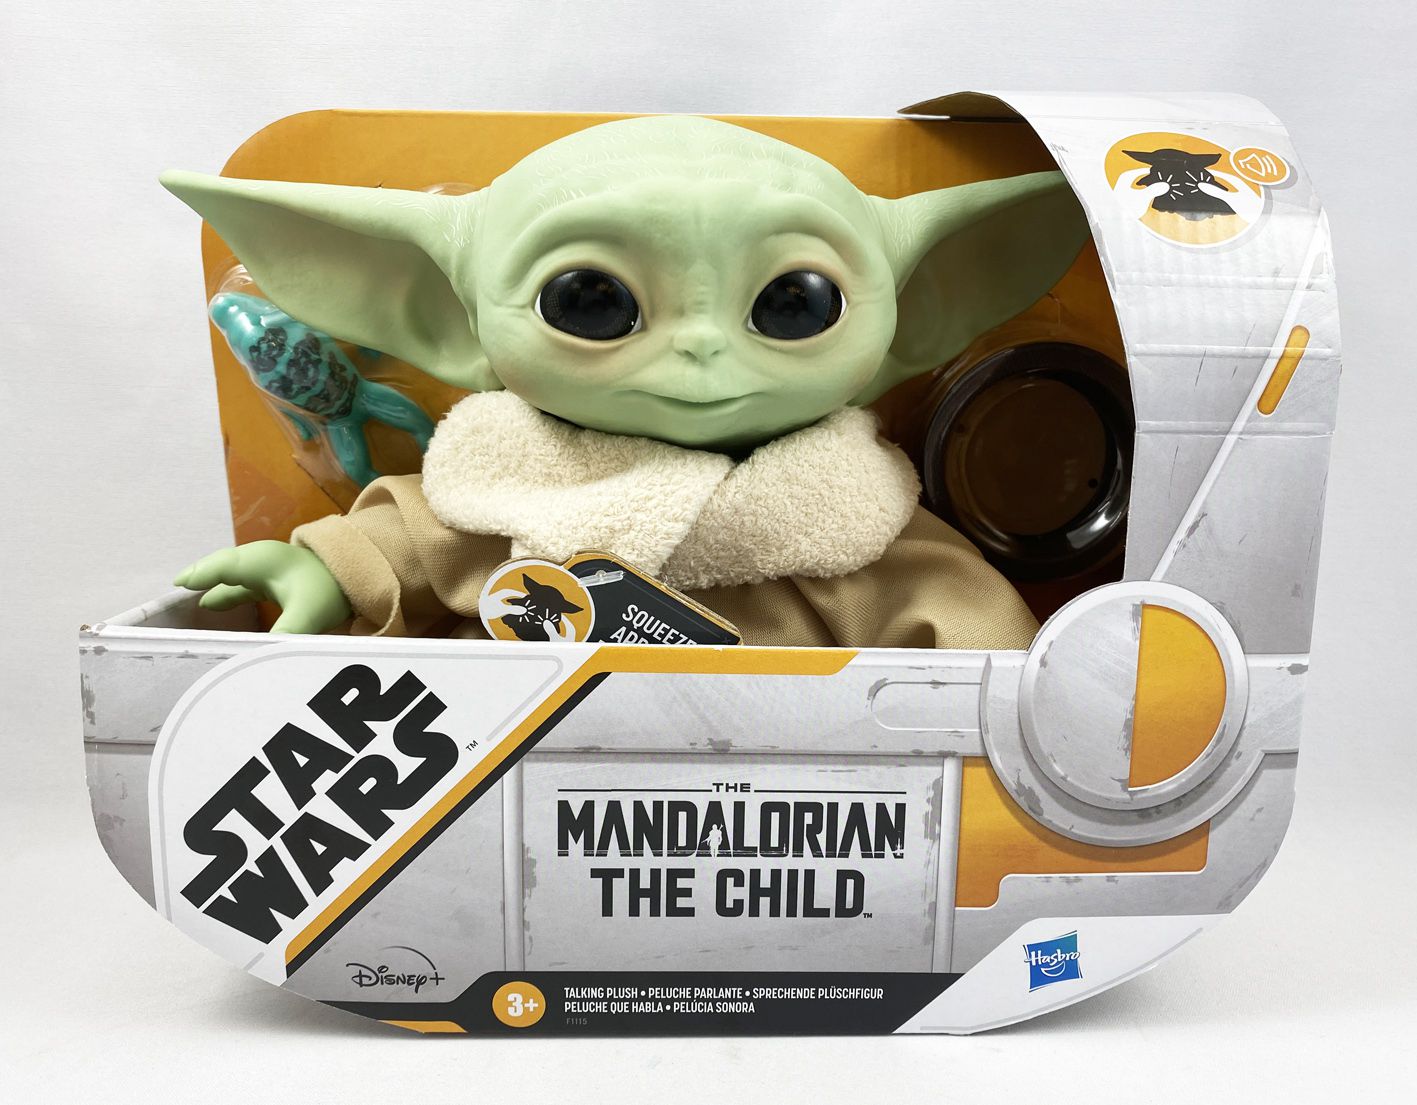 Baby Yoda the Child de mandalorian Hasbro sammelfigur Talking Plush 19 cm 